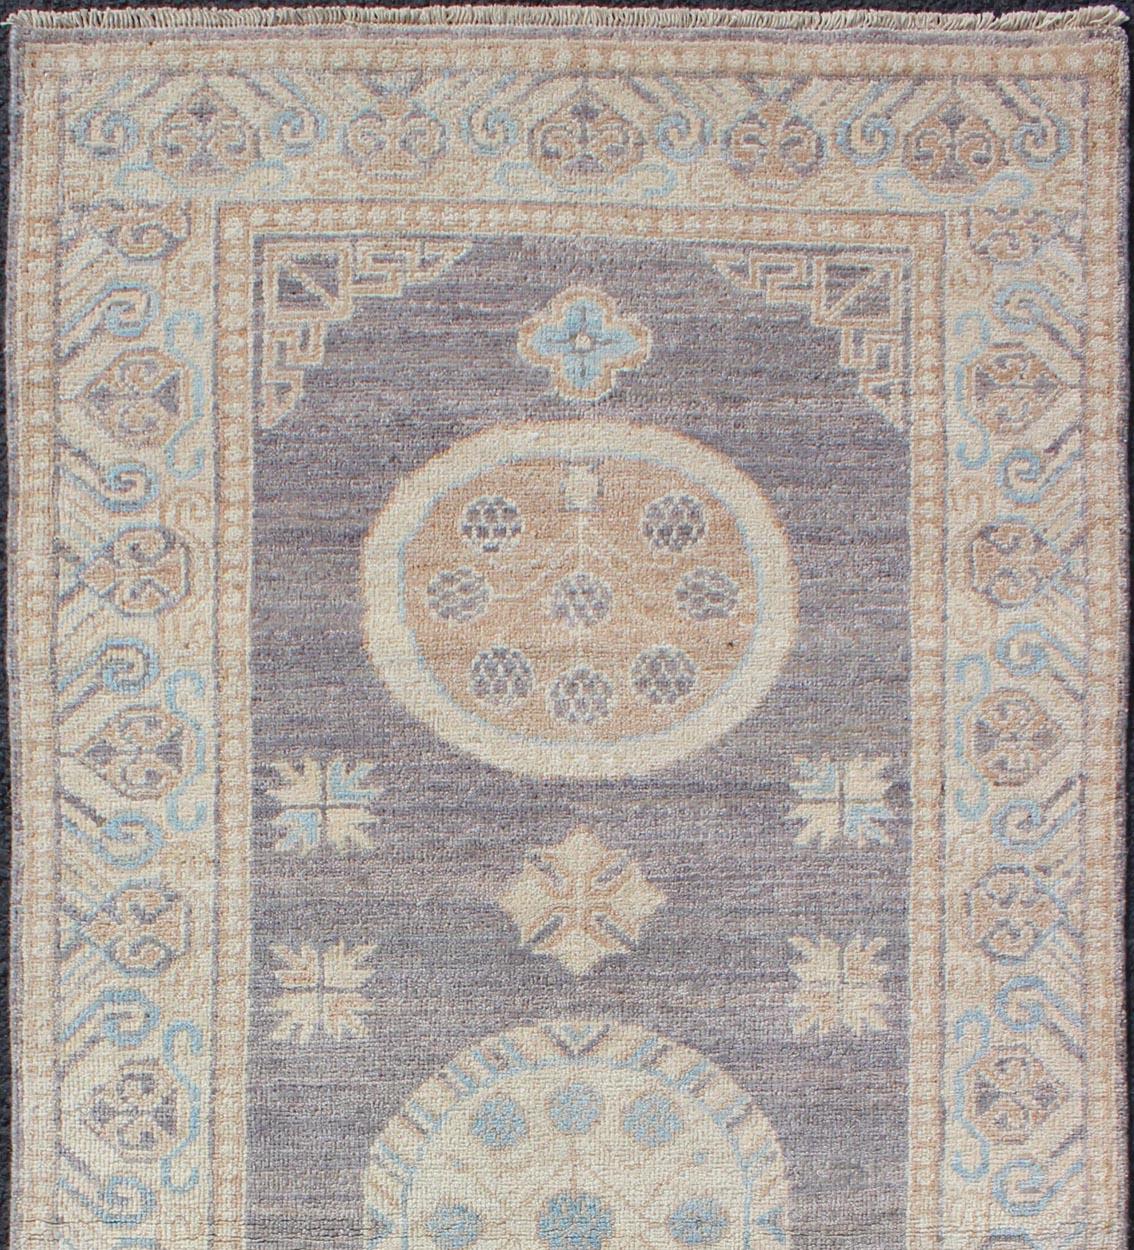 Keivan Woven Arts Khotan Design Läufer mit geometrisch-kreisförmigem Medaillon-Muster. Keivan Woven Arts / Teppich / MP-1809-10037 Herkunftsland / Art: Afghanistan / Khotan. 
Maße: 2'6 x 5'1 
Dieser Khotan zeichnet sich durch ein geometrisches